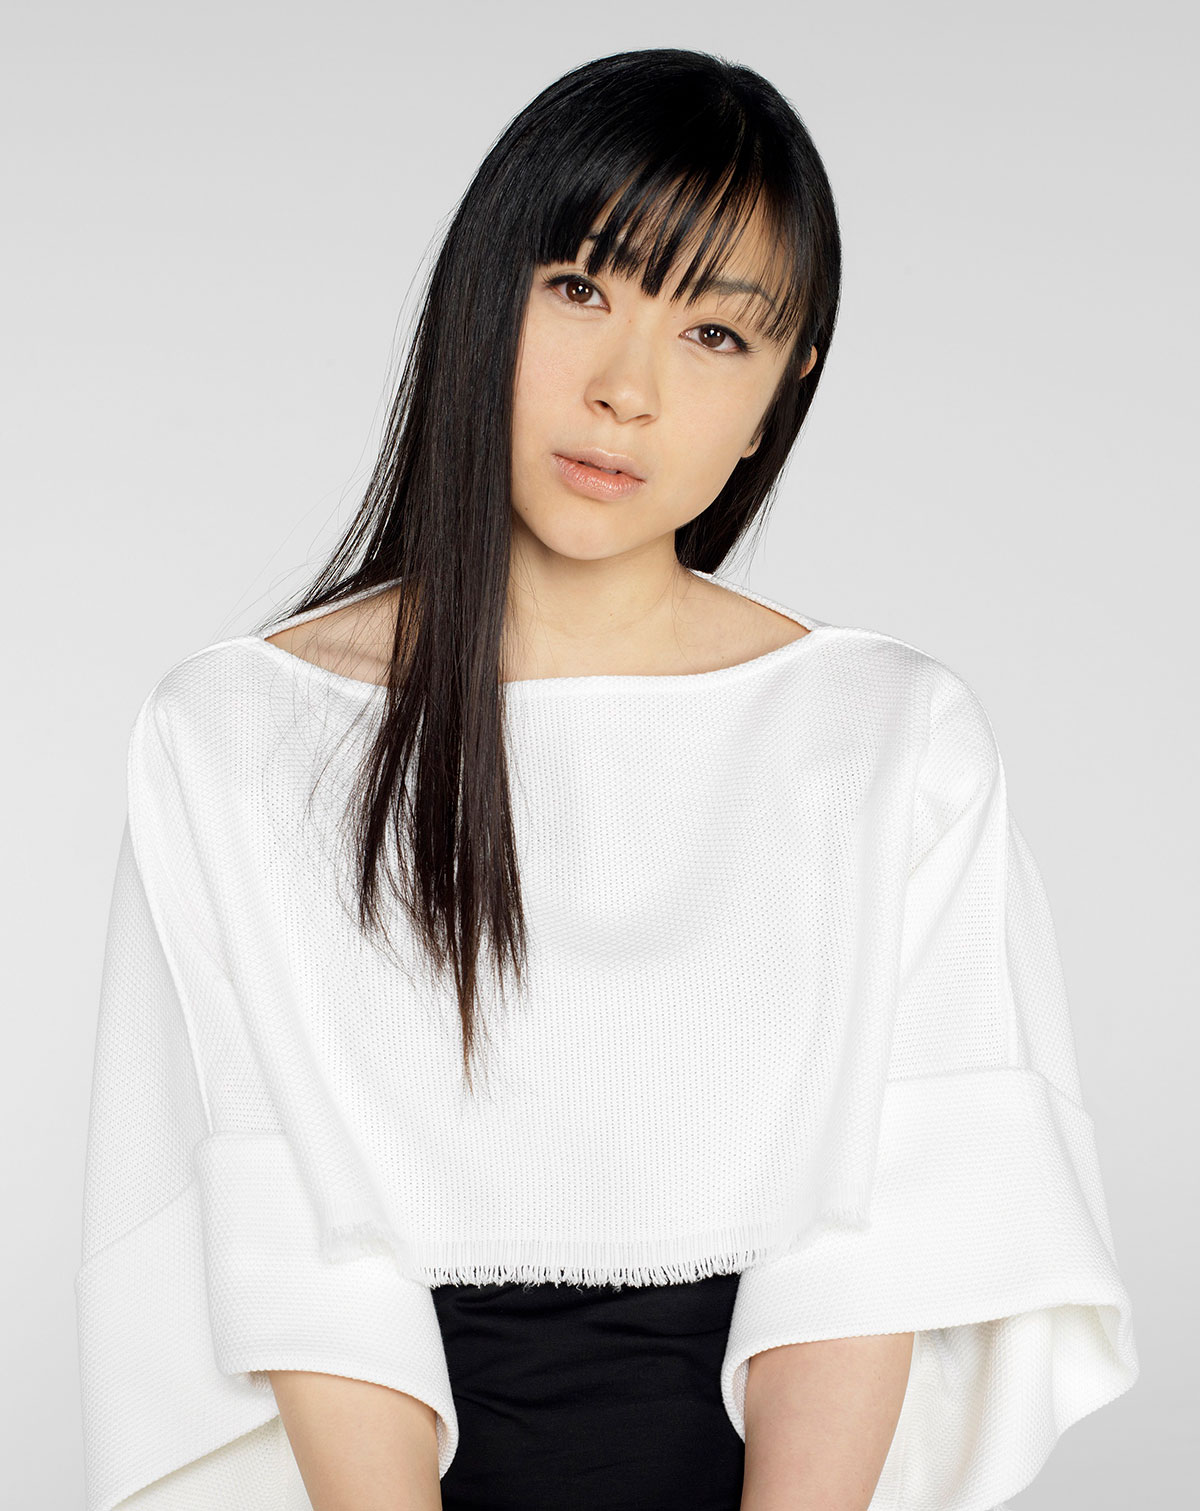 宇多田ヒカル、“桜流し” “花束を君に”収録、8年ぶり6枚目フルアルバム